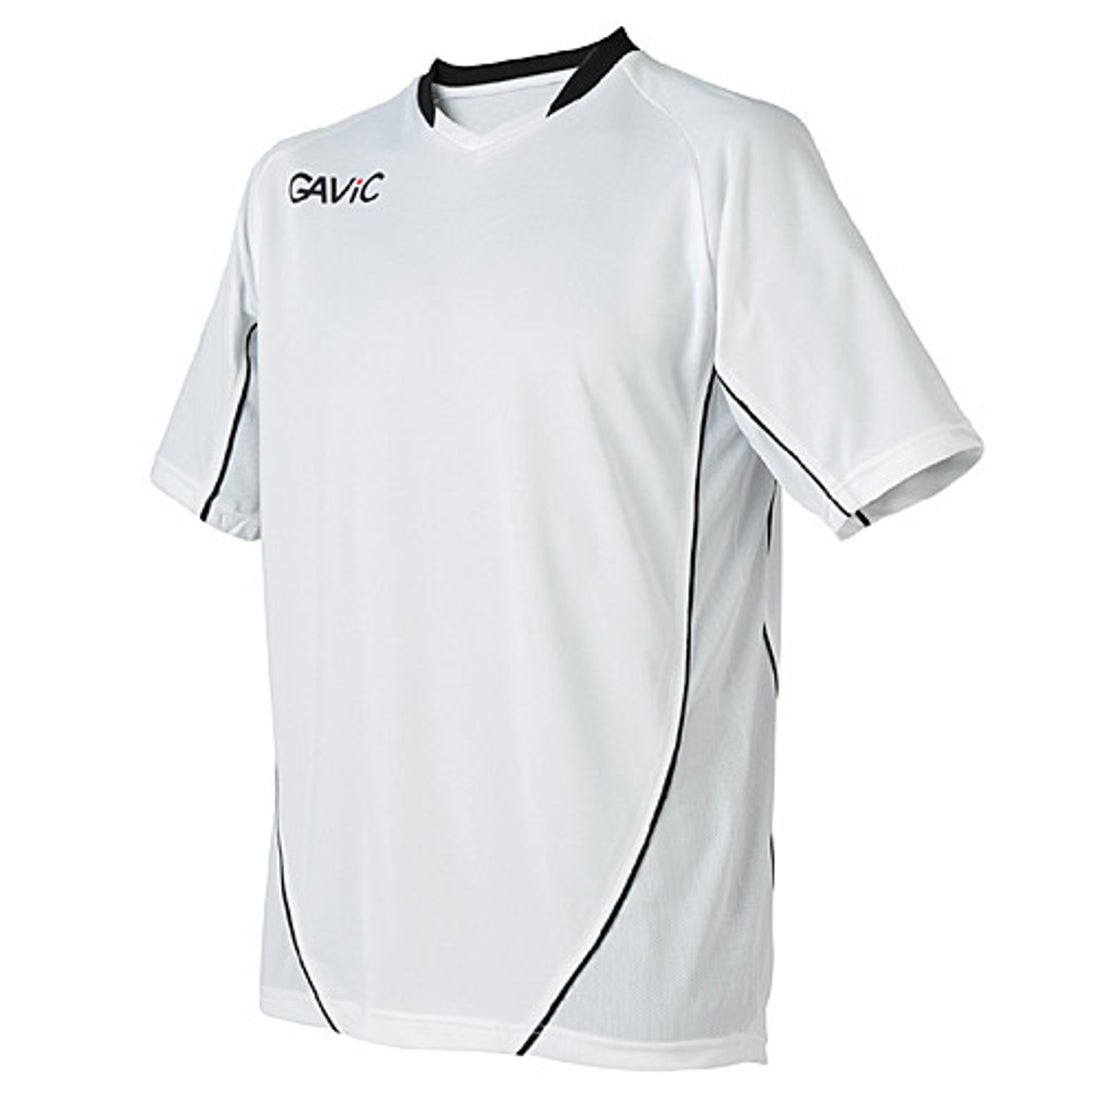 GAViC ガビック ベーシック ゲームシャツ 半袖 ジュニア(ホワイト) GA6602 WHT トレーニングウェア -サッカーショップ【SWS】